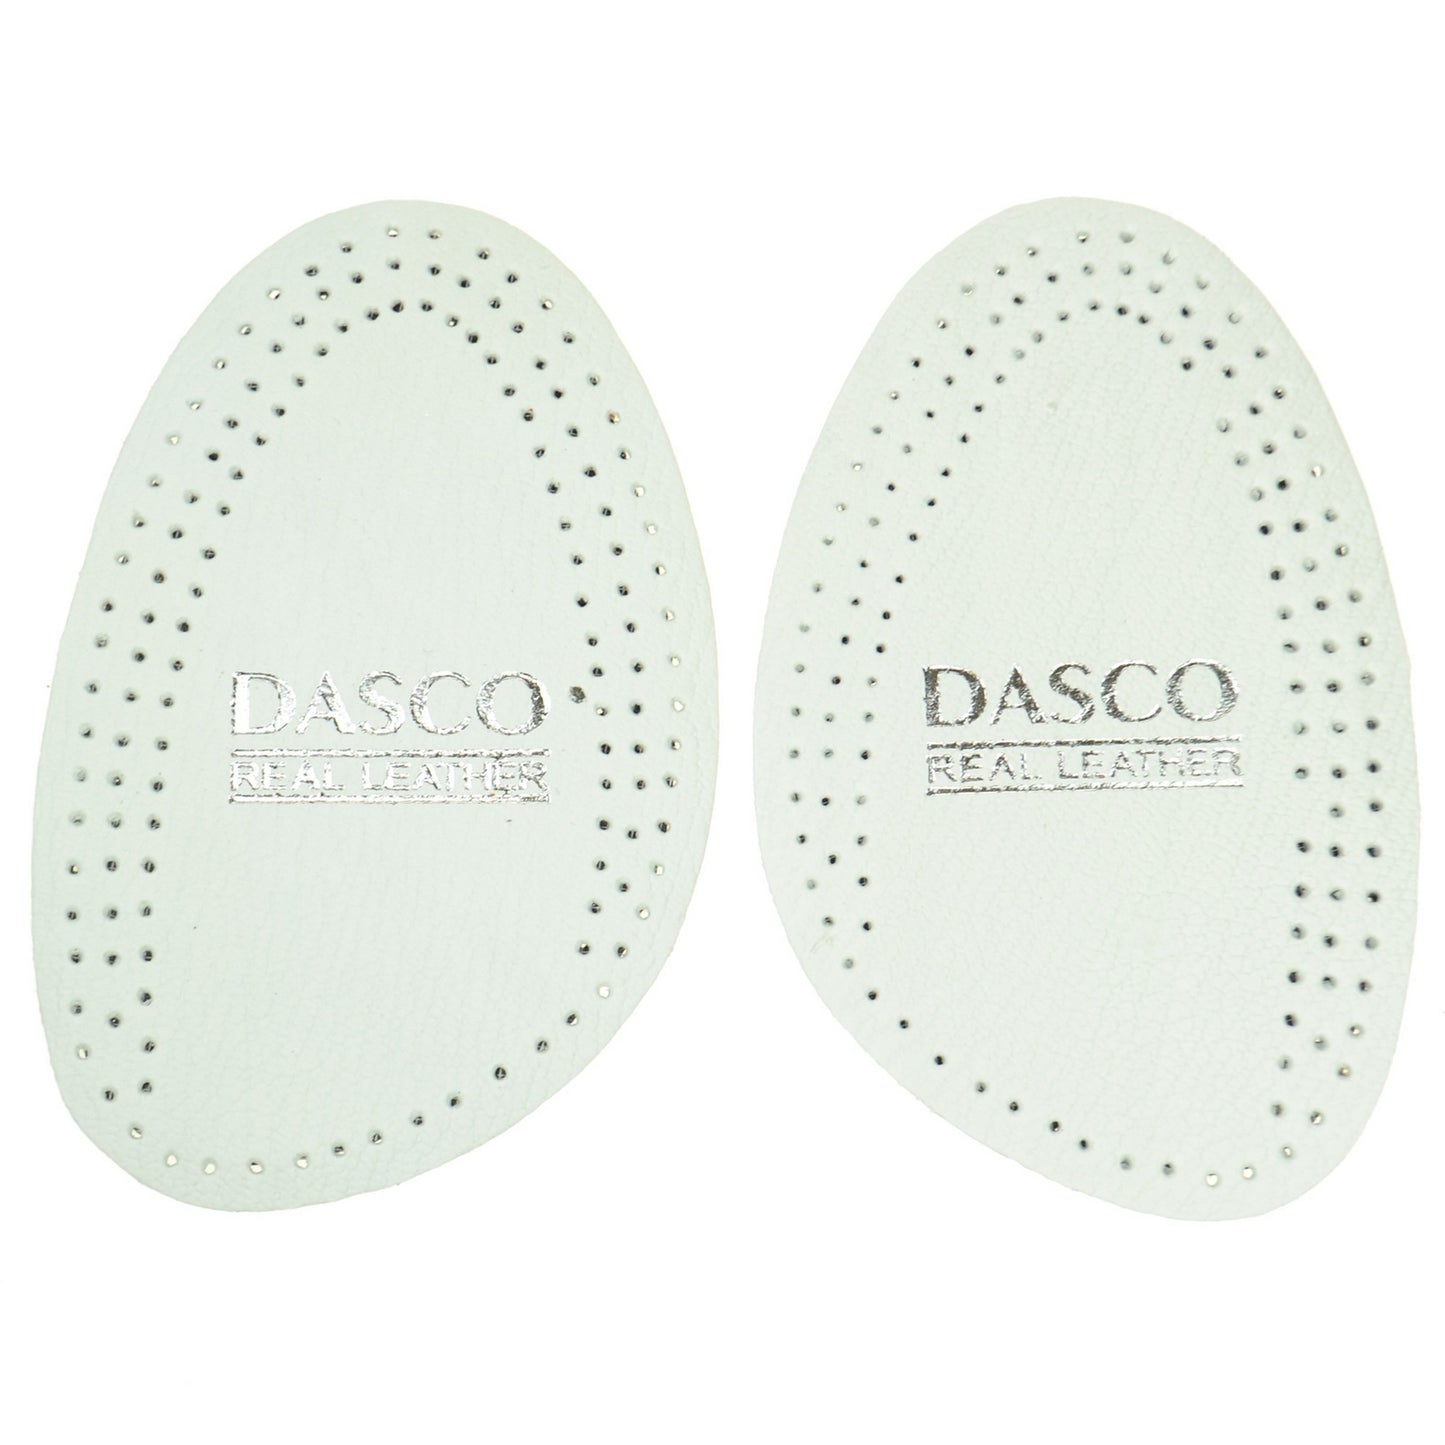 Dasco White Half Leather Insoles